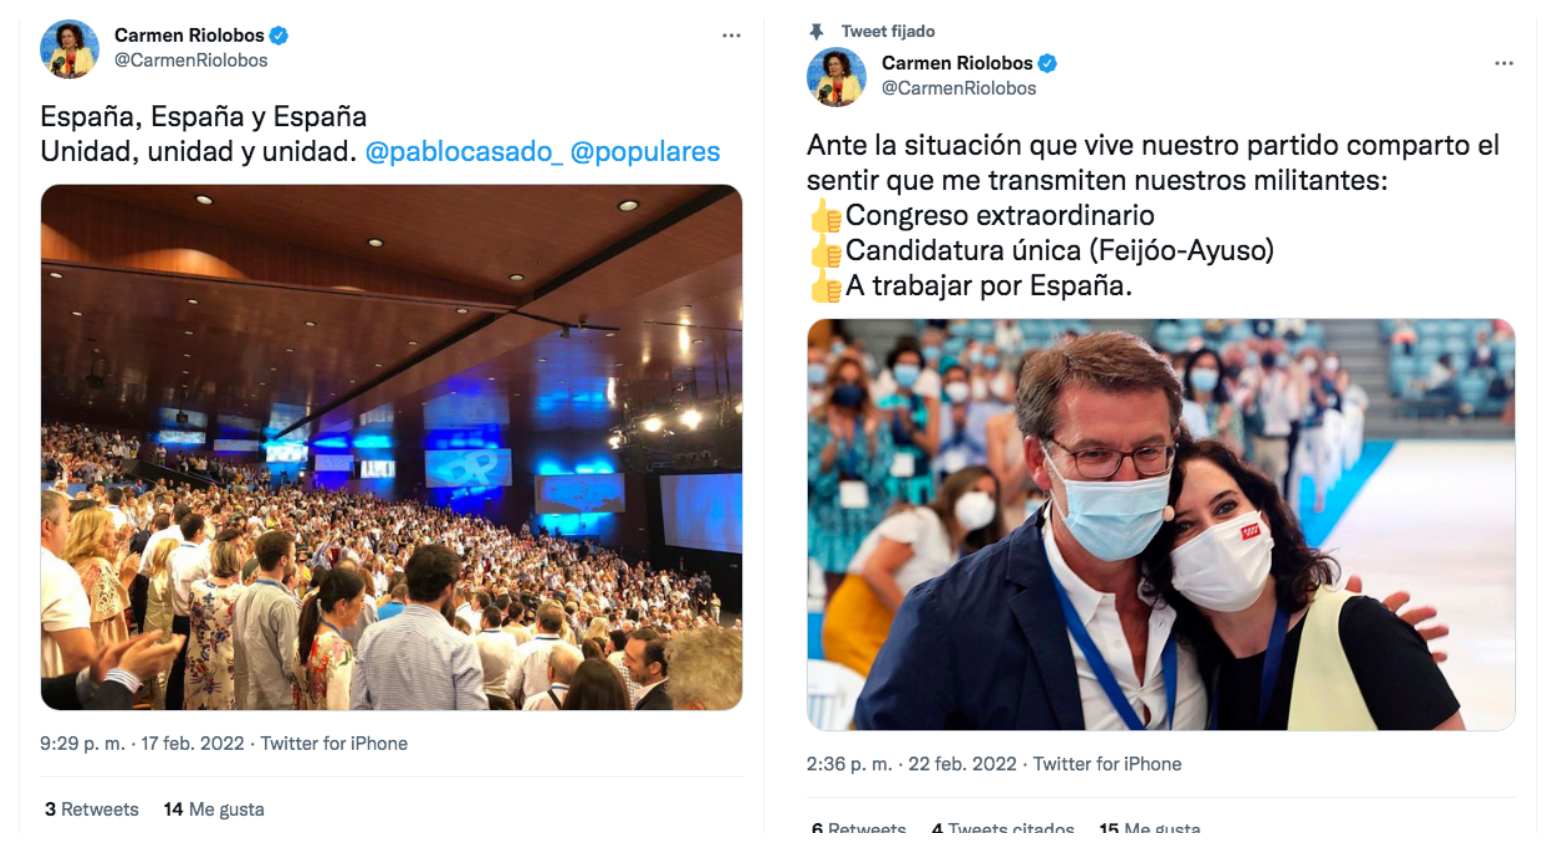 El cambio en los tuits de Carmen Riolobos en solo cuatro días.